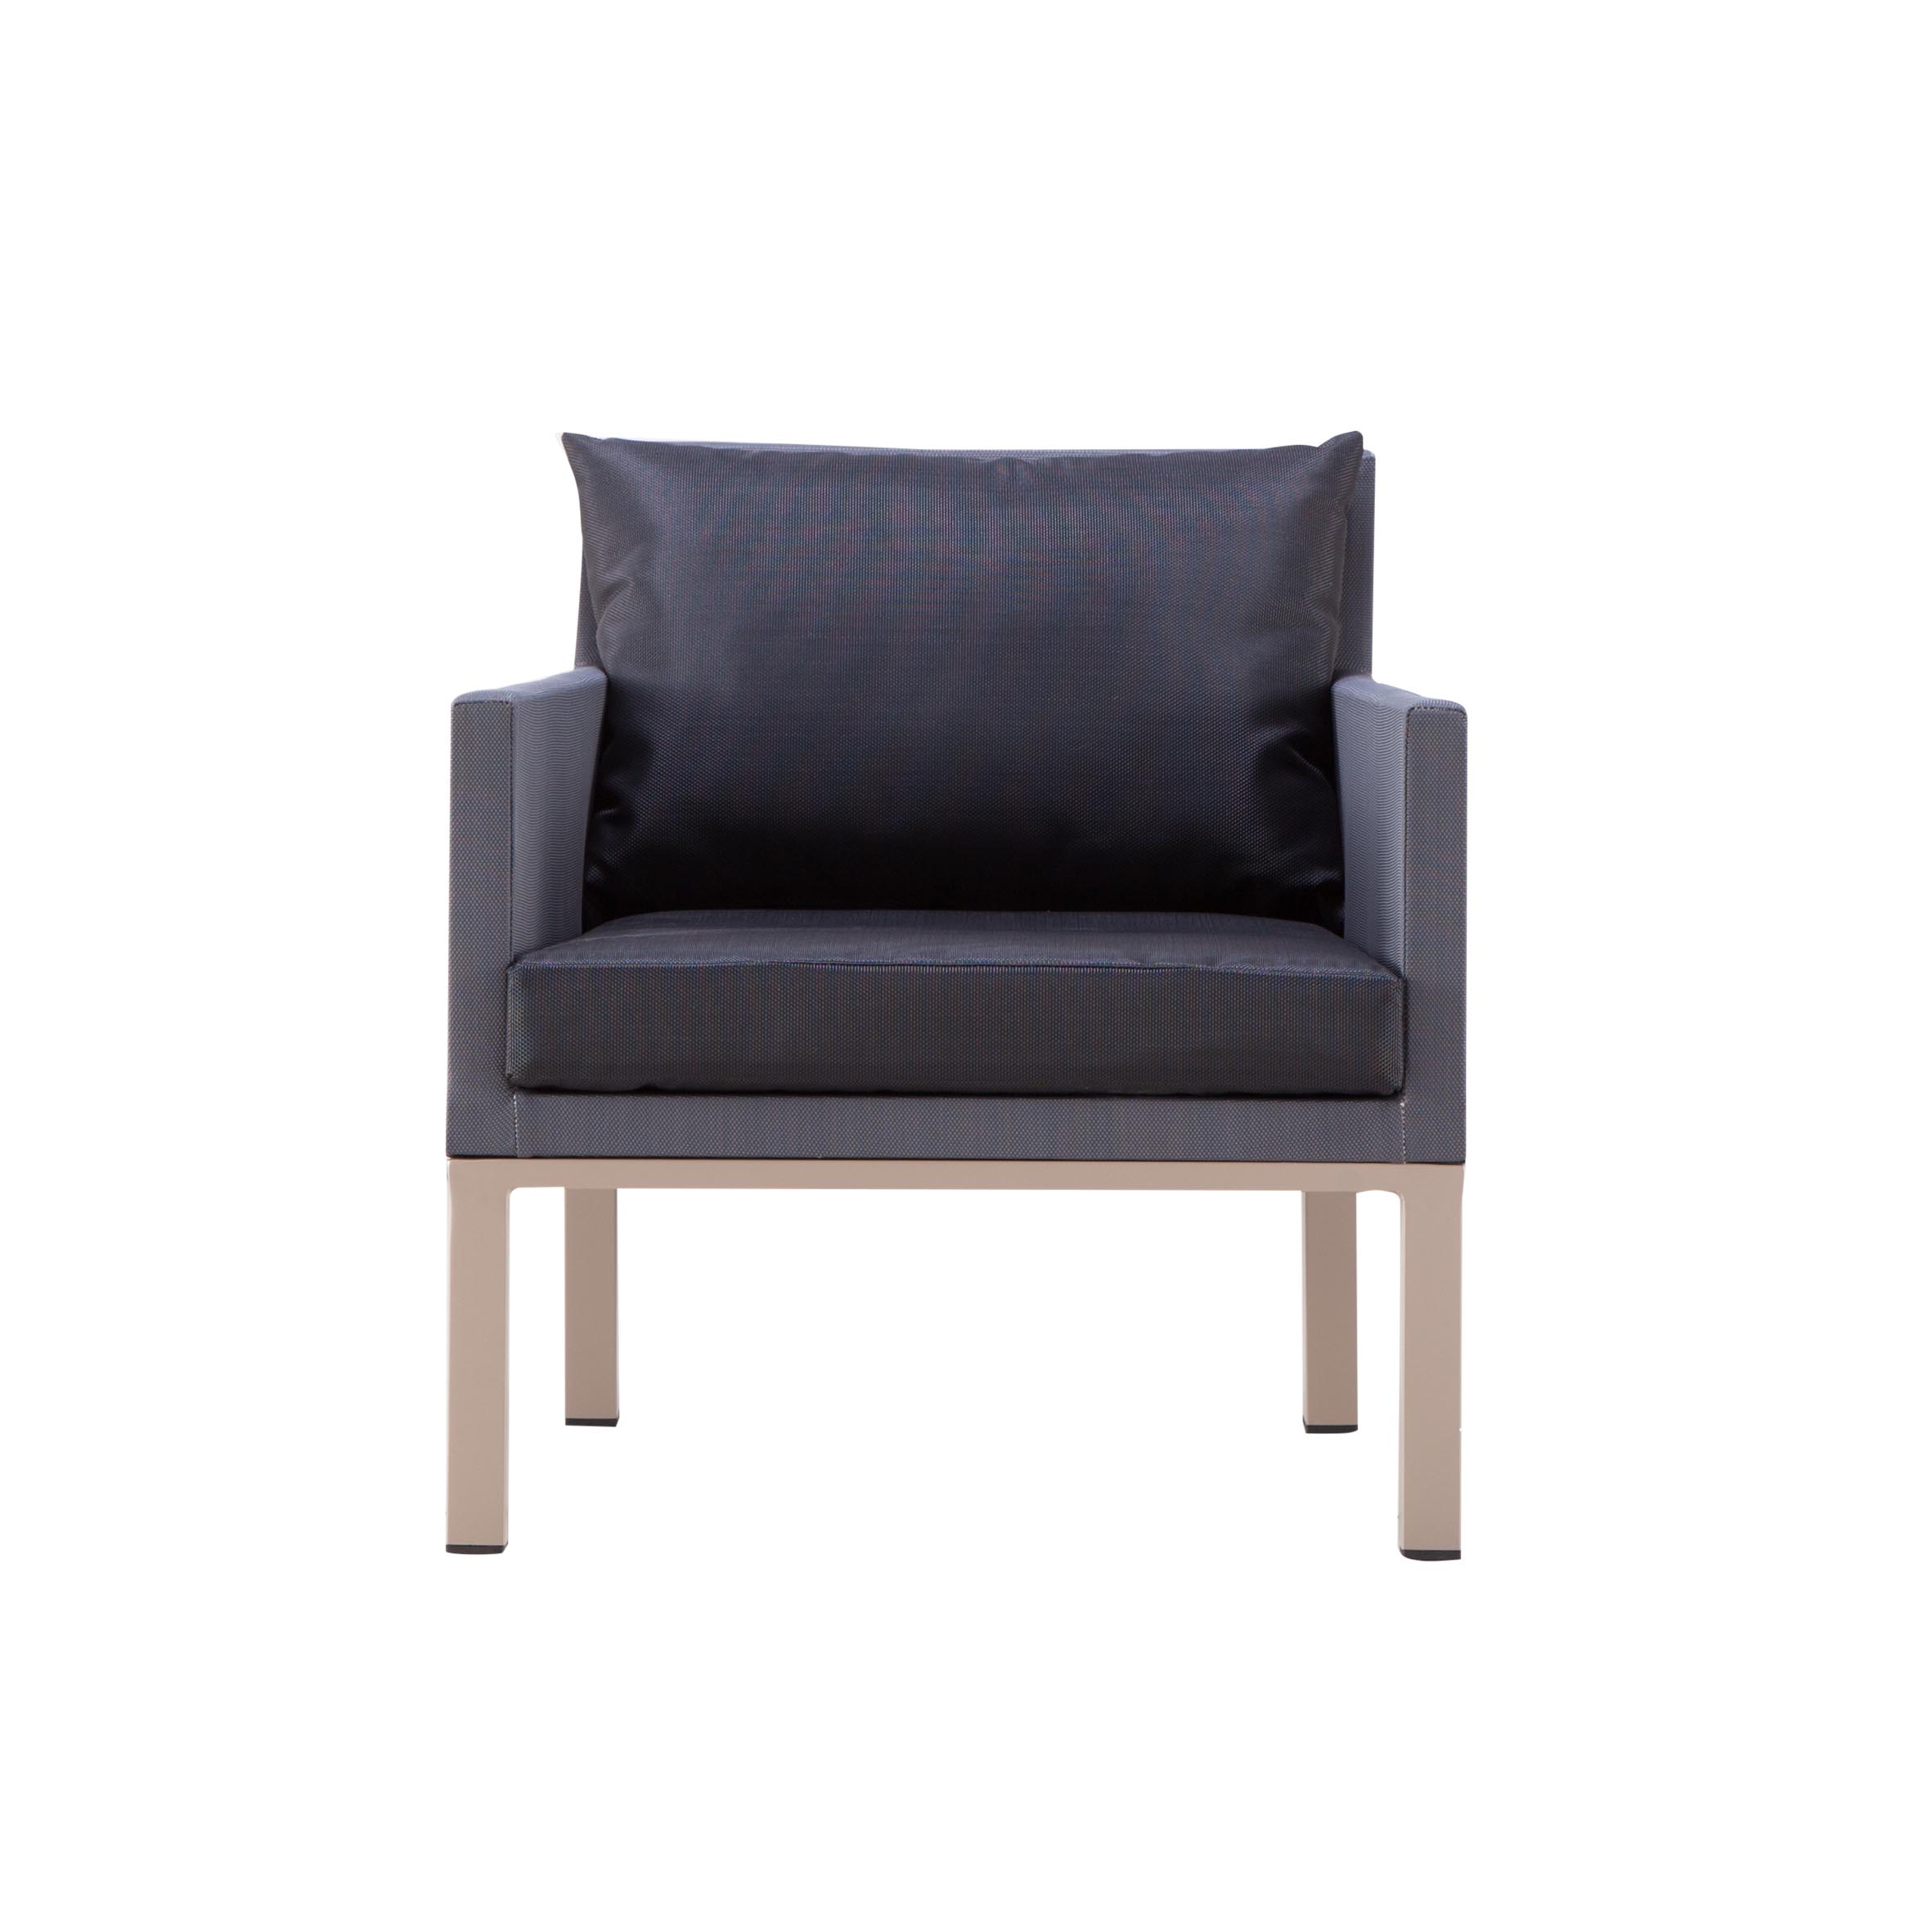 Mose textile single sofa S2